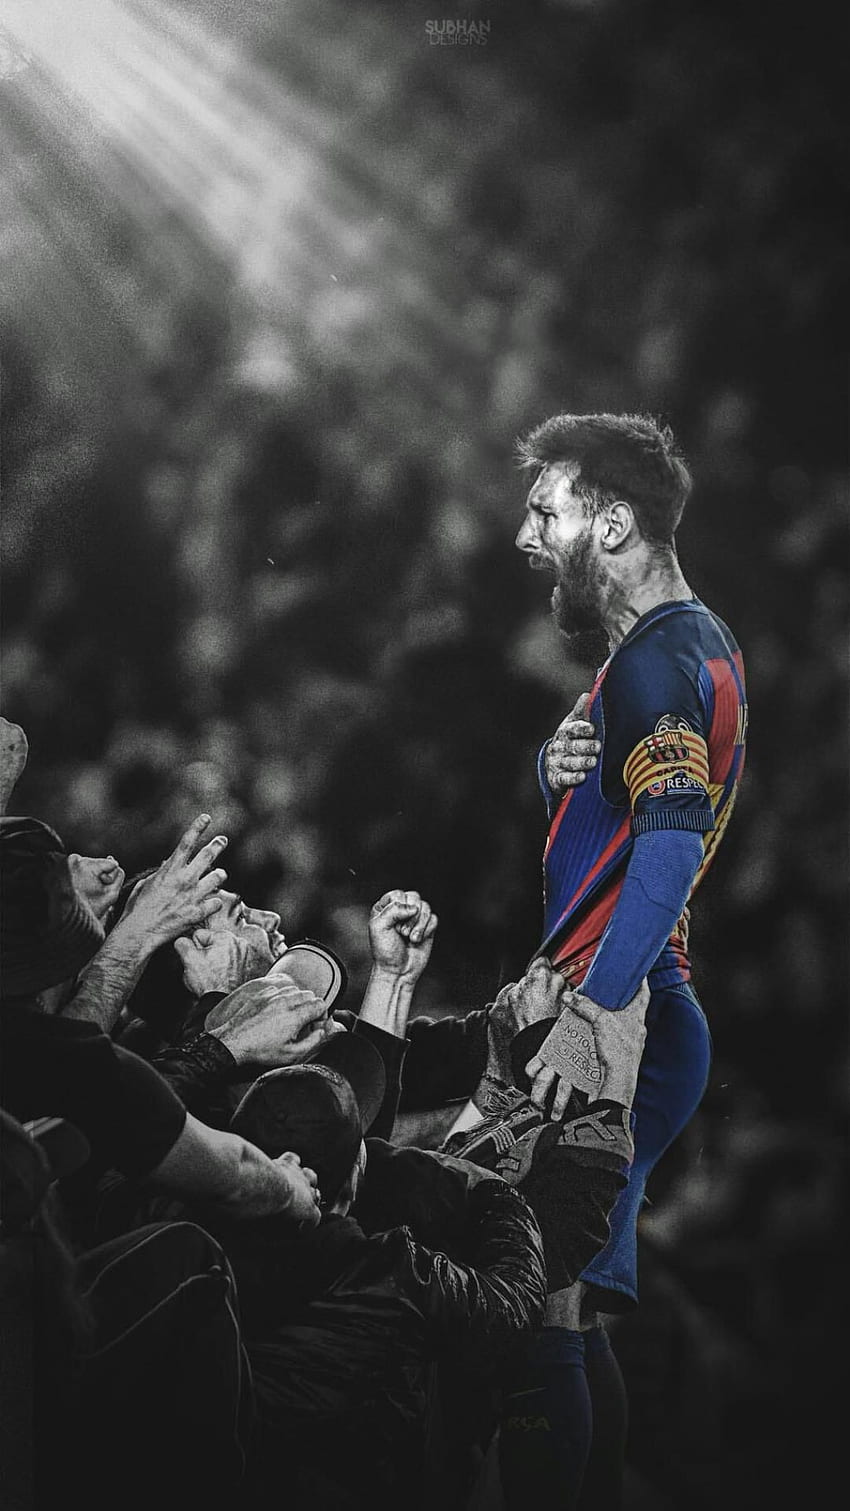 Bạn có yêu mến Messi - một trong những cầu thủ bóng đá vĩ đại nhất trong lịch sử không? Nếu có, hãy cùng xem hình ảnh độc quyền về anh ấy để thấy rõ hơn tài năng đặc biệt của Messi trên sân cỏ.